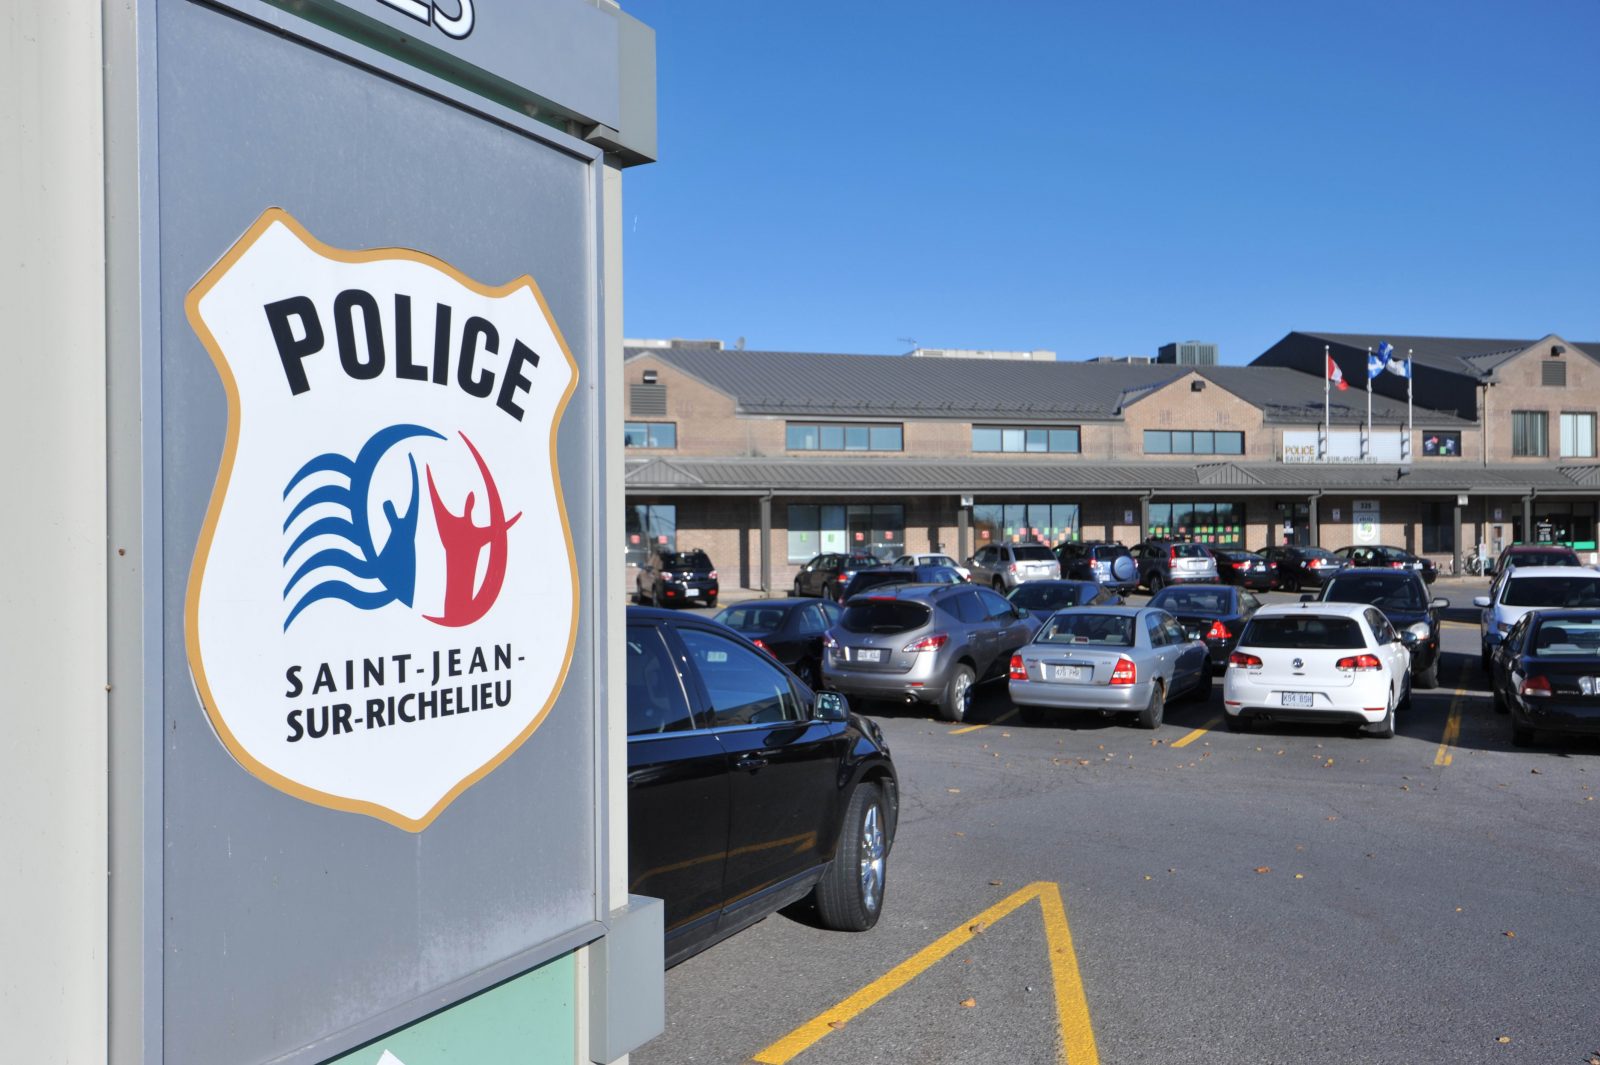 Sondage sur le service de police de Saint-Jean